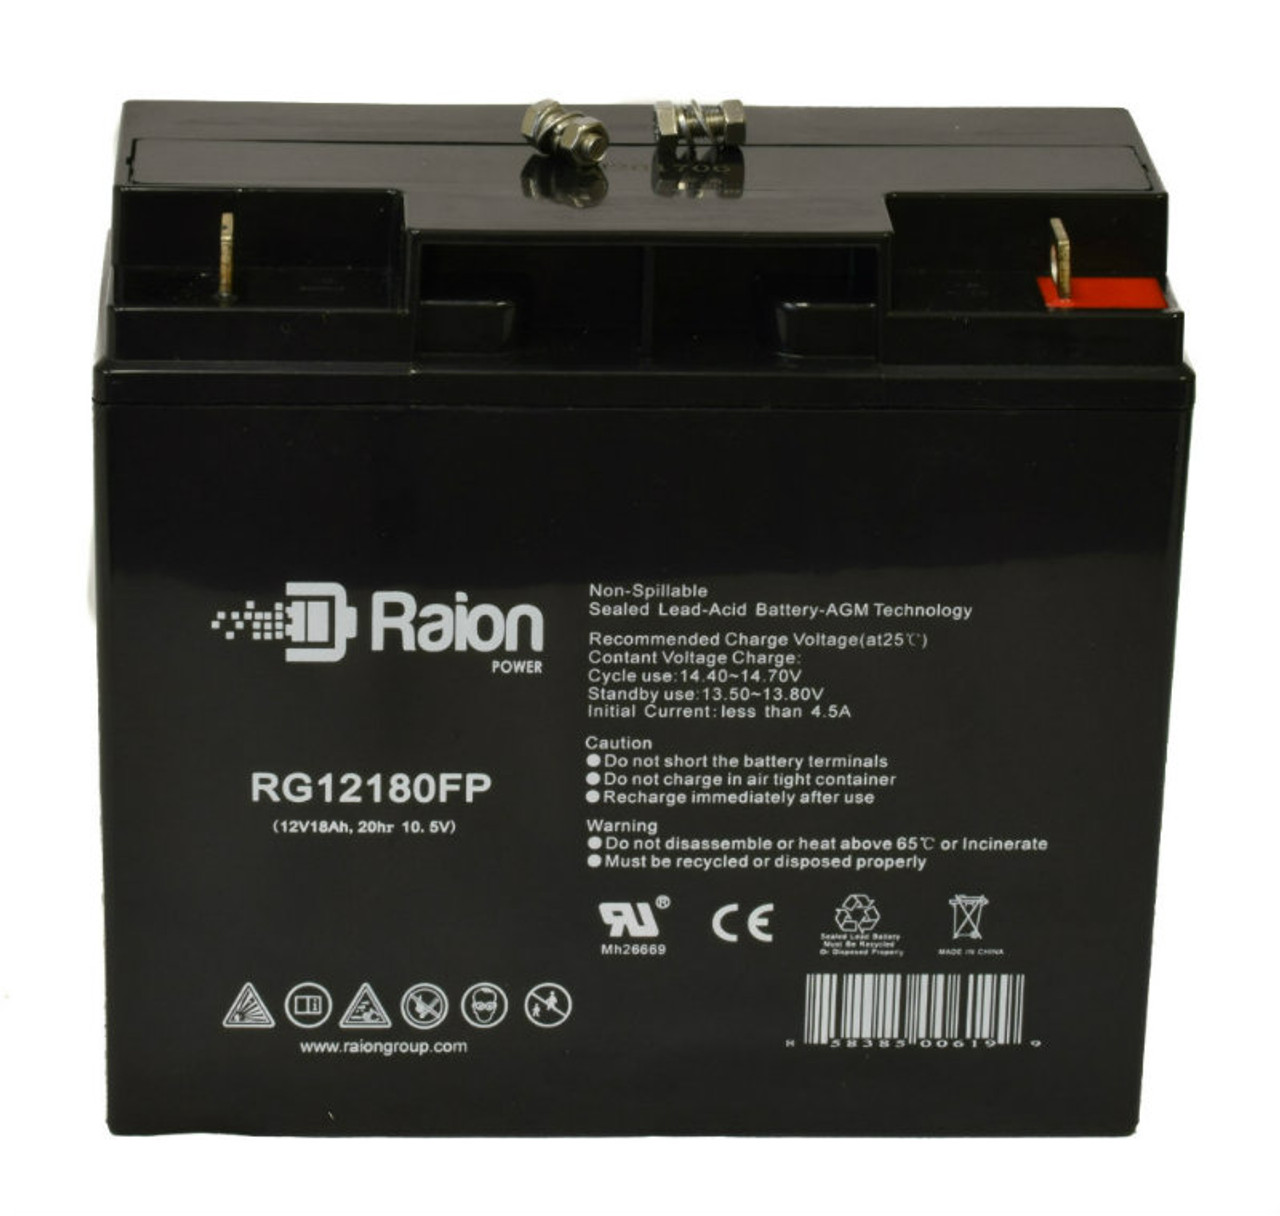 Raion Power RG12180FP 12V 18Ah Lead Acid Battery for Vision CG12-17XA